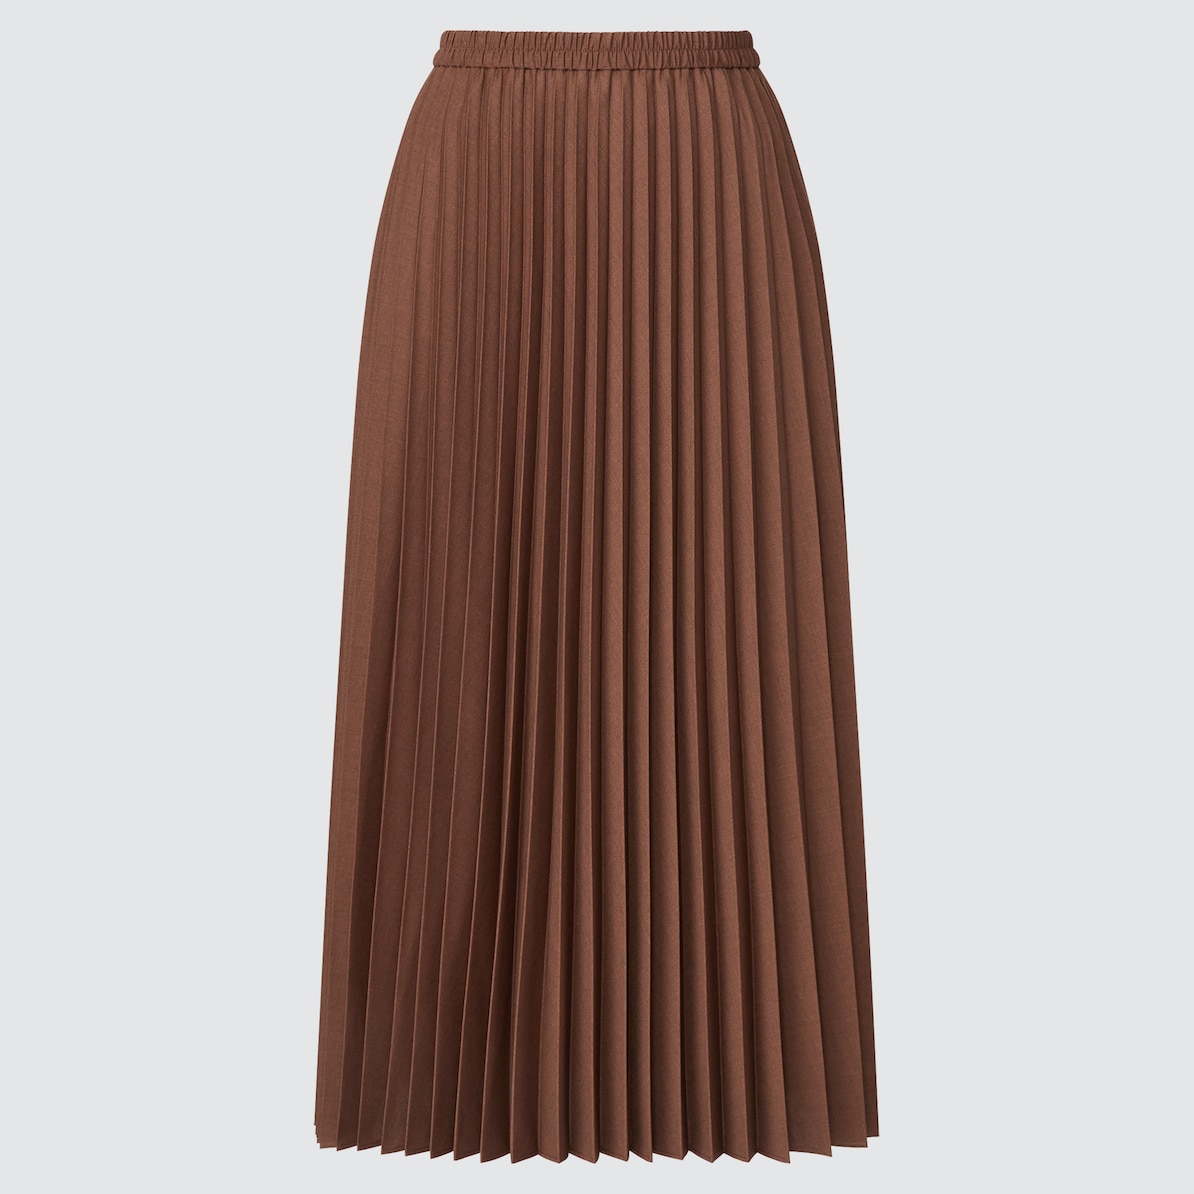 アコーディオンプリーツスカート 丈標準78 cm Women ユニクロ